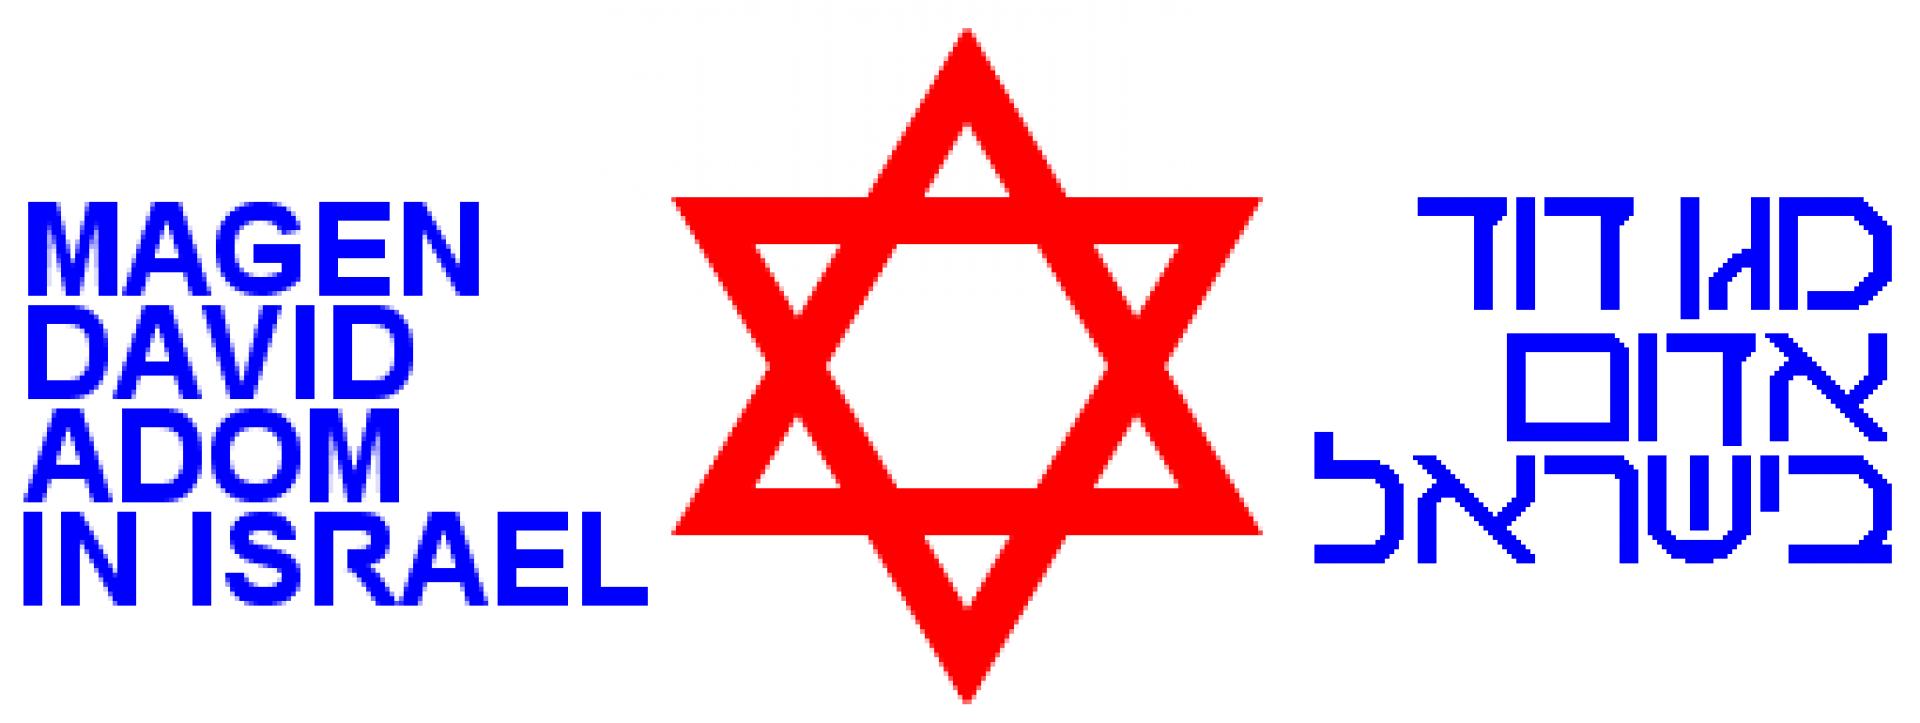 Magen David Adom ((hébreu : מגן דוד אדום, abr. MDA) logo